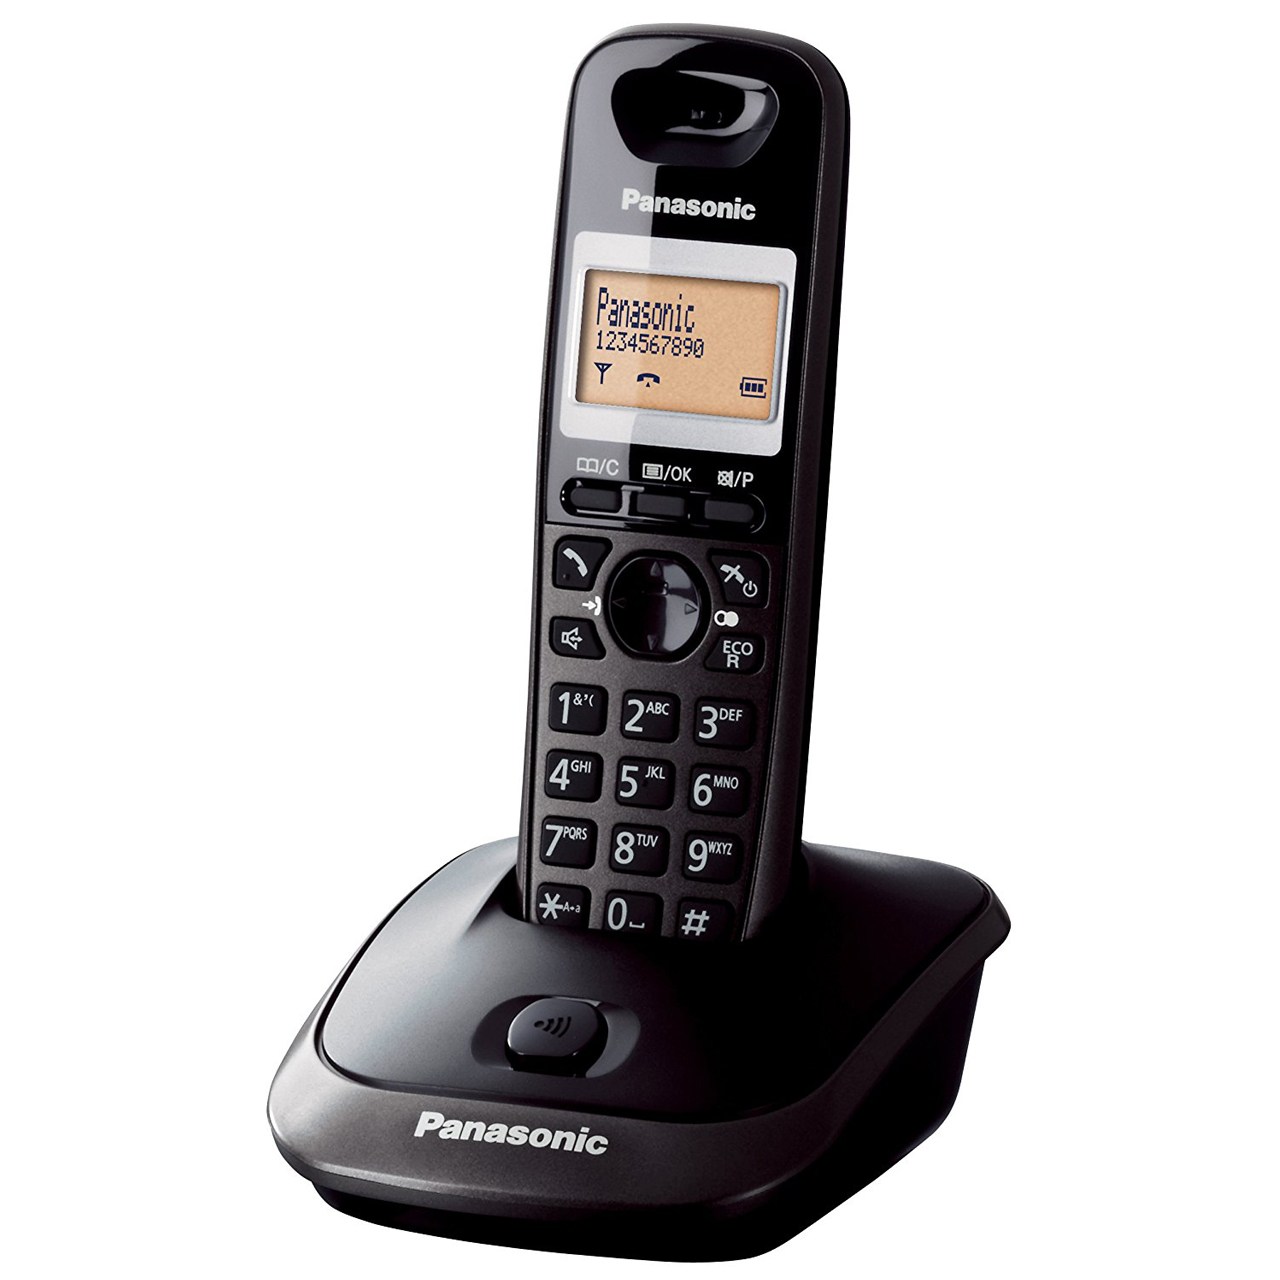 نکته خرید - قیمت روز تلفن بی سیم پاناسونیک مدل KX-TG2511 خرید